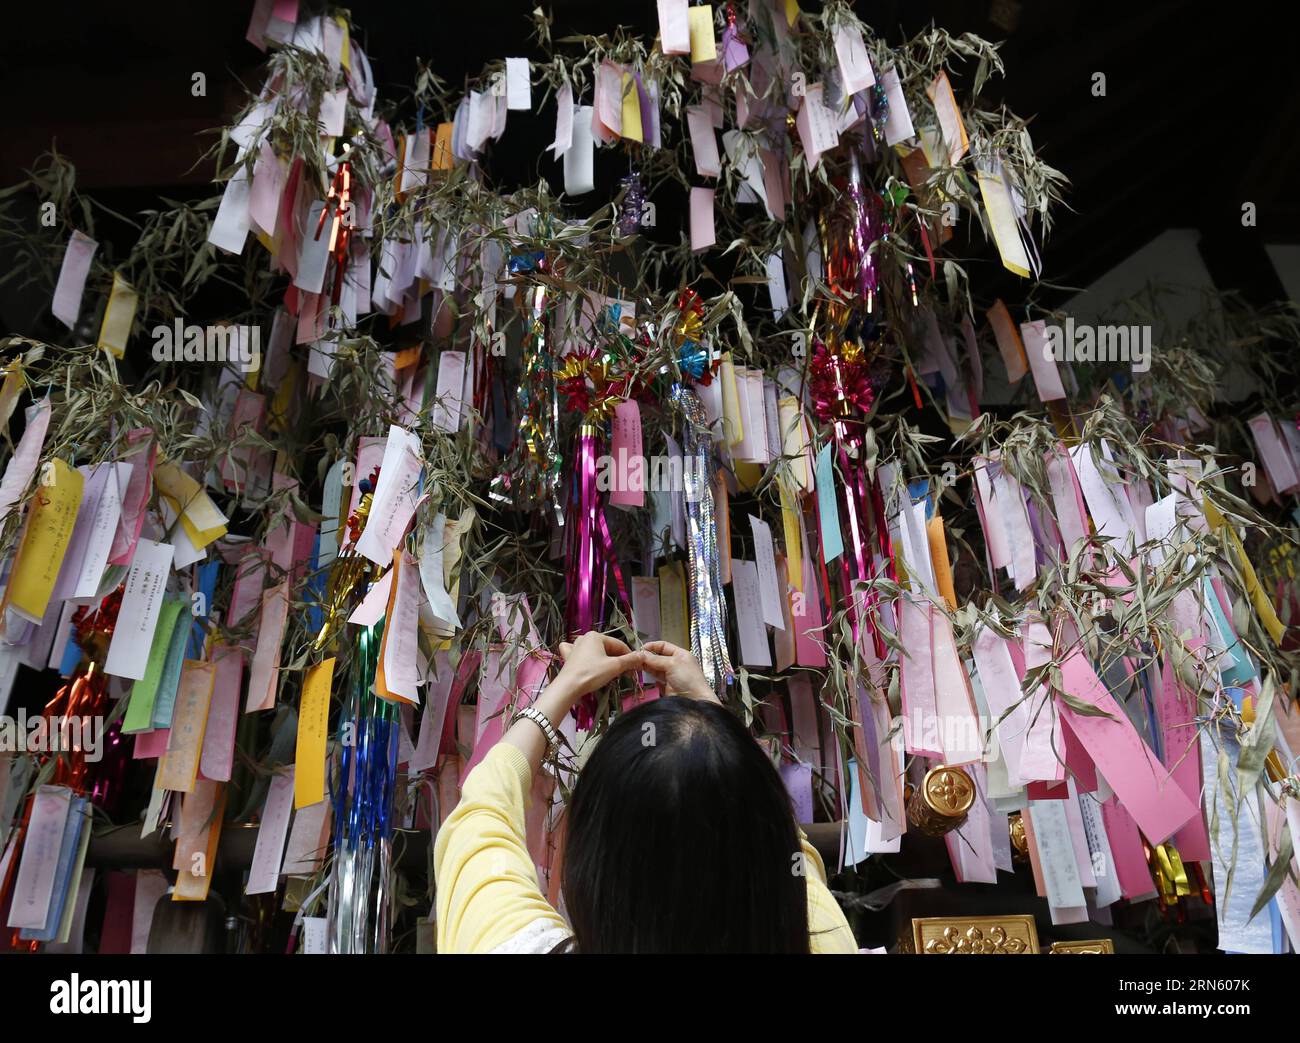 (150707) -- TOKYO, 7 luglio 2015 -- Una donna lega una striscia di carta con il suo desiderio di un bambù per il Tanabata Festival, o Star Festival, in un santuario di Tokyo, in Giappone, 7 luglio 2014. Ogni anno i giapponesi celebrano il tradizionale Star Festival il 7 luglio. ) (Zjy) JAPAN-TOKYO-TANABATA FESTIVAL Stringer PUBLICATIONxNOTxINxCHN 150707 Tokyo 7 luglio 2015 una donna lega una striscia di carta con il suo desiderio di un bambù per il Tanabata Festival o Star Festival IN un santuario di Tokyo Giappone 7 luglio 2014 ogni anno il giapponese celebra IL tradizionale Star Festival IL 7 luglio zjy Japan Tokyo Tanabata Festival Stringer PUBLIC Foto Stock